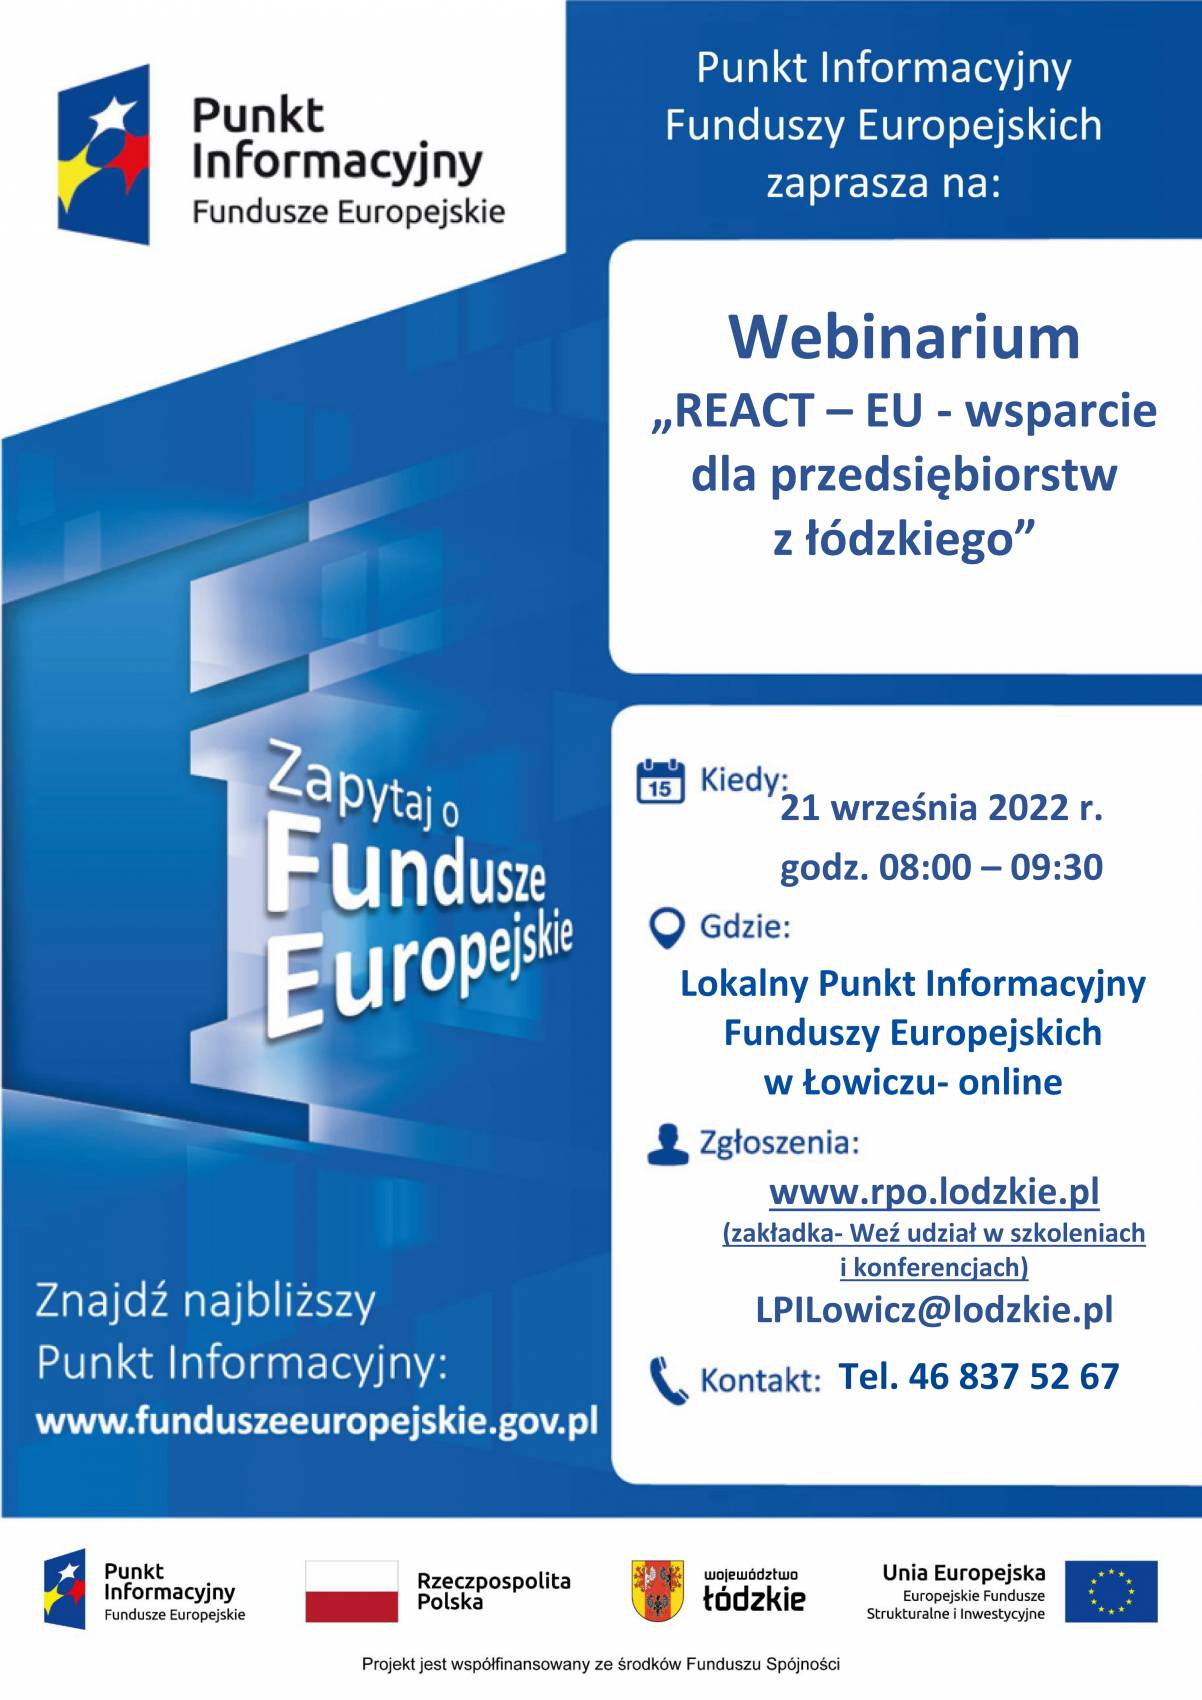 Punkt Informacyjny Funduszy Europejskich w Łowiczu zaprasza na bezpłatne spotkanie informacyjne